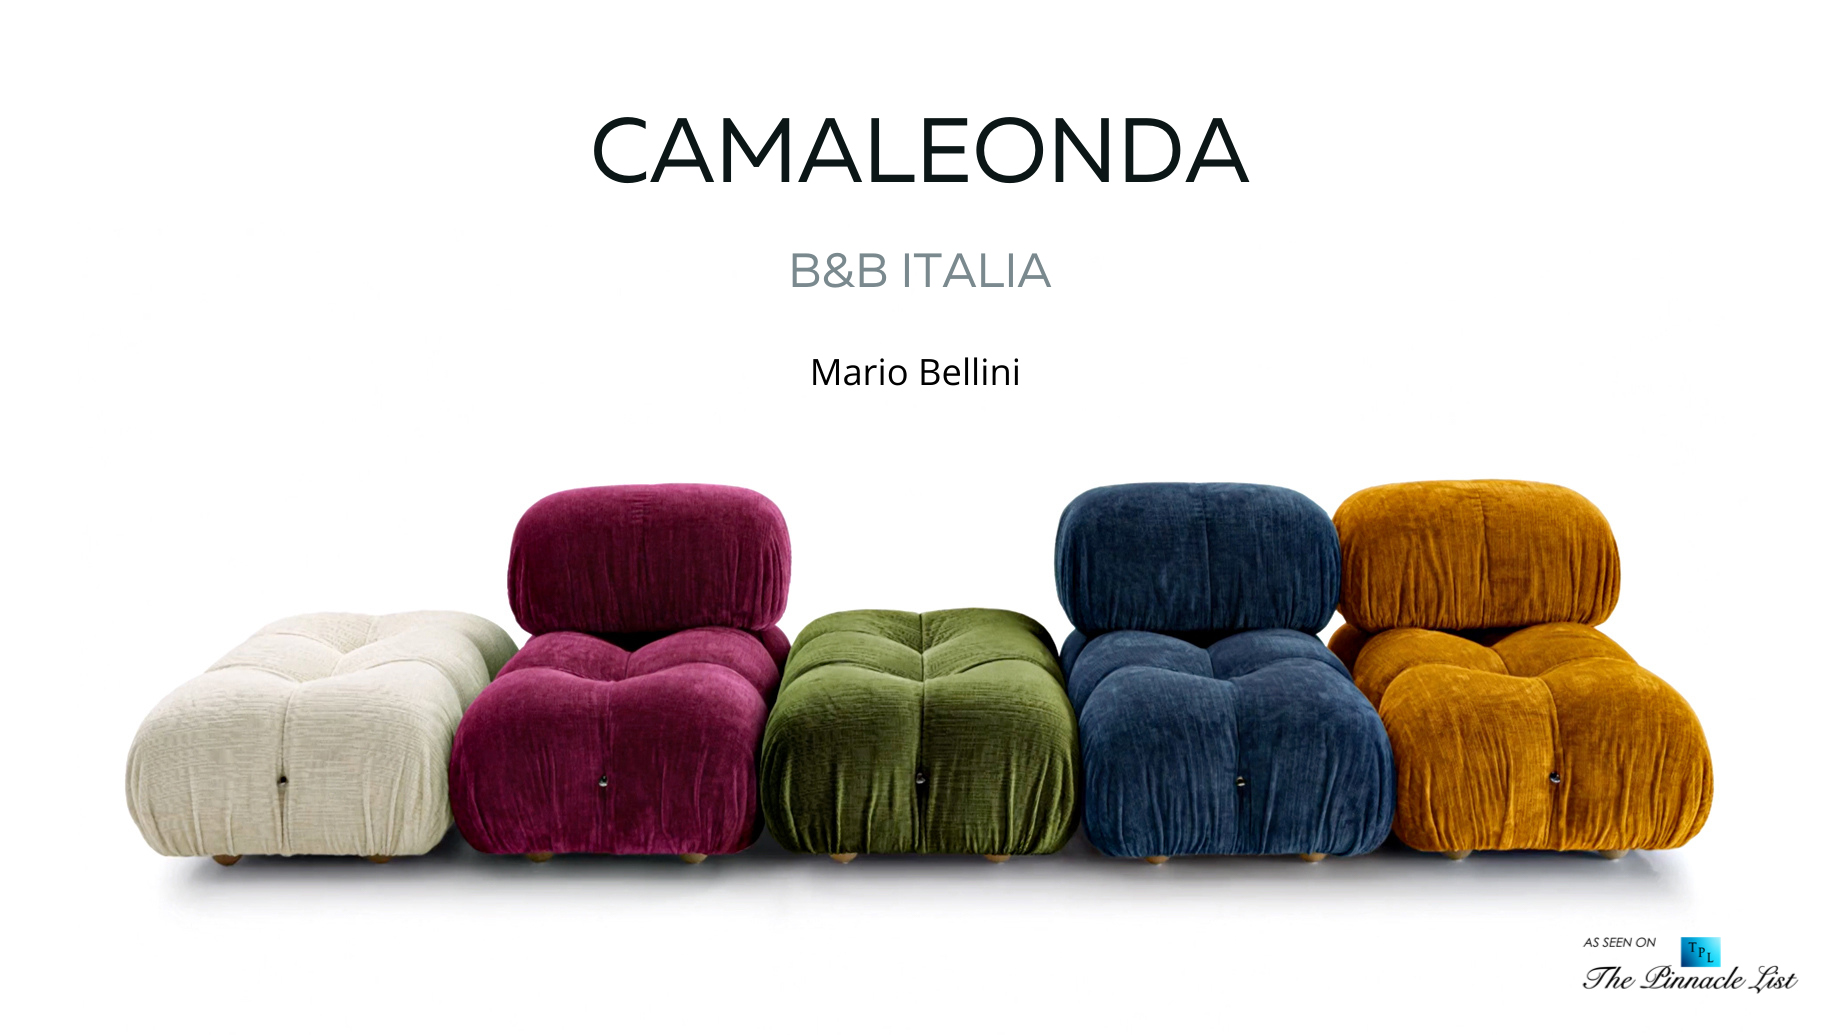 Mario Bellini Contemporary Classic Camaleonda Sofa Collection by B&B Italia